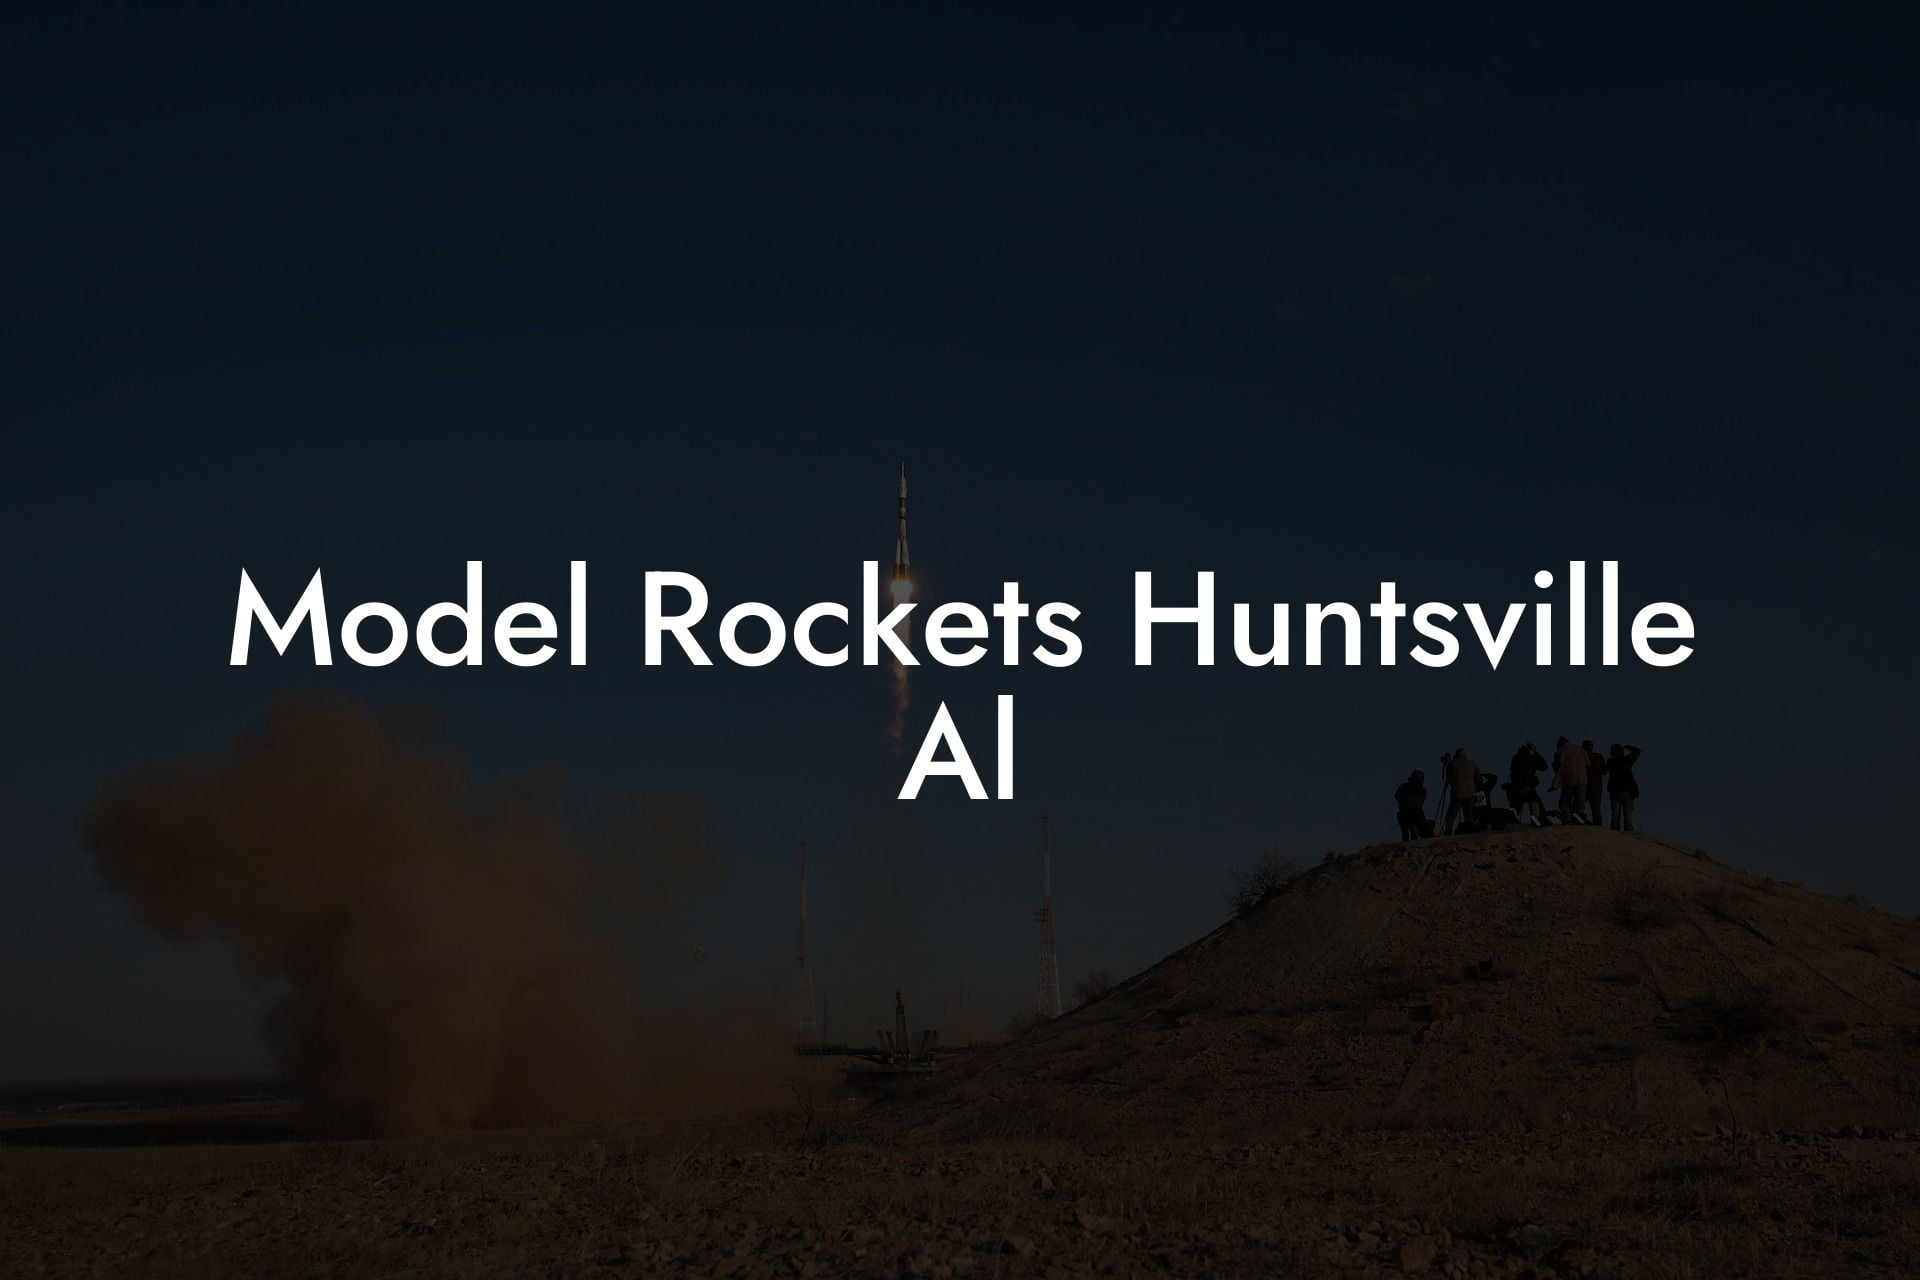 Model Rockets Huntsville Al